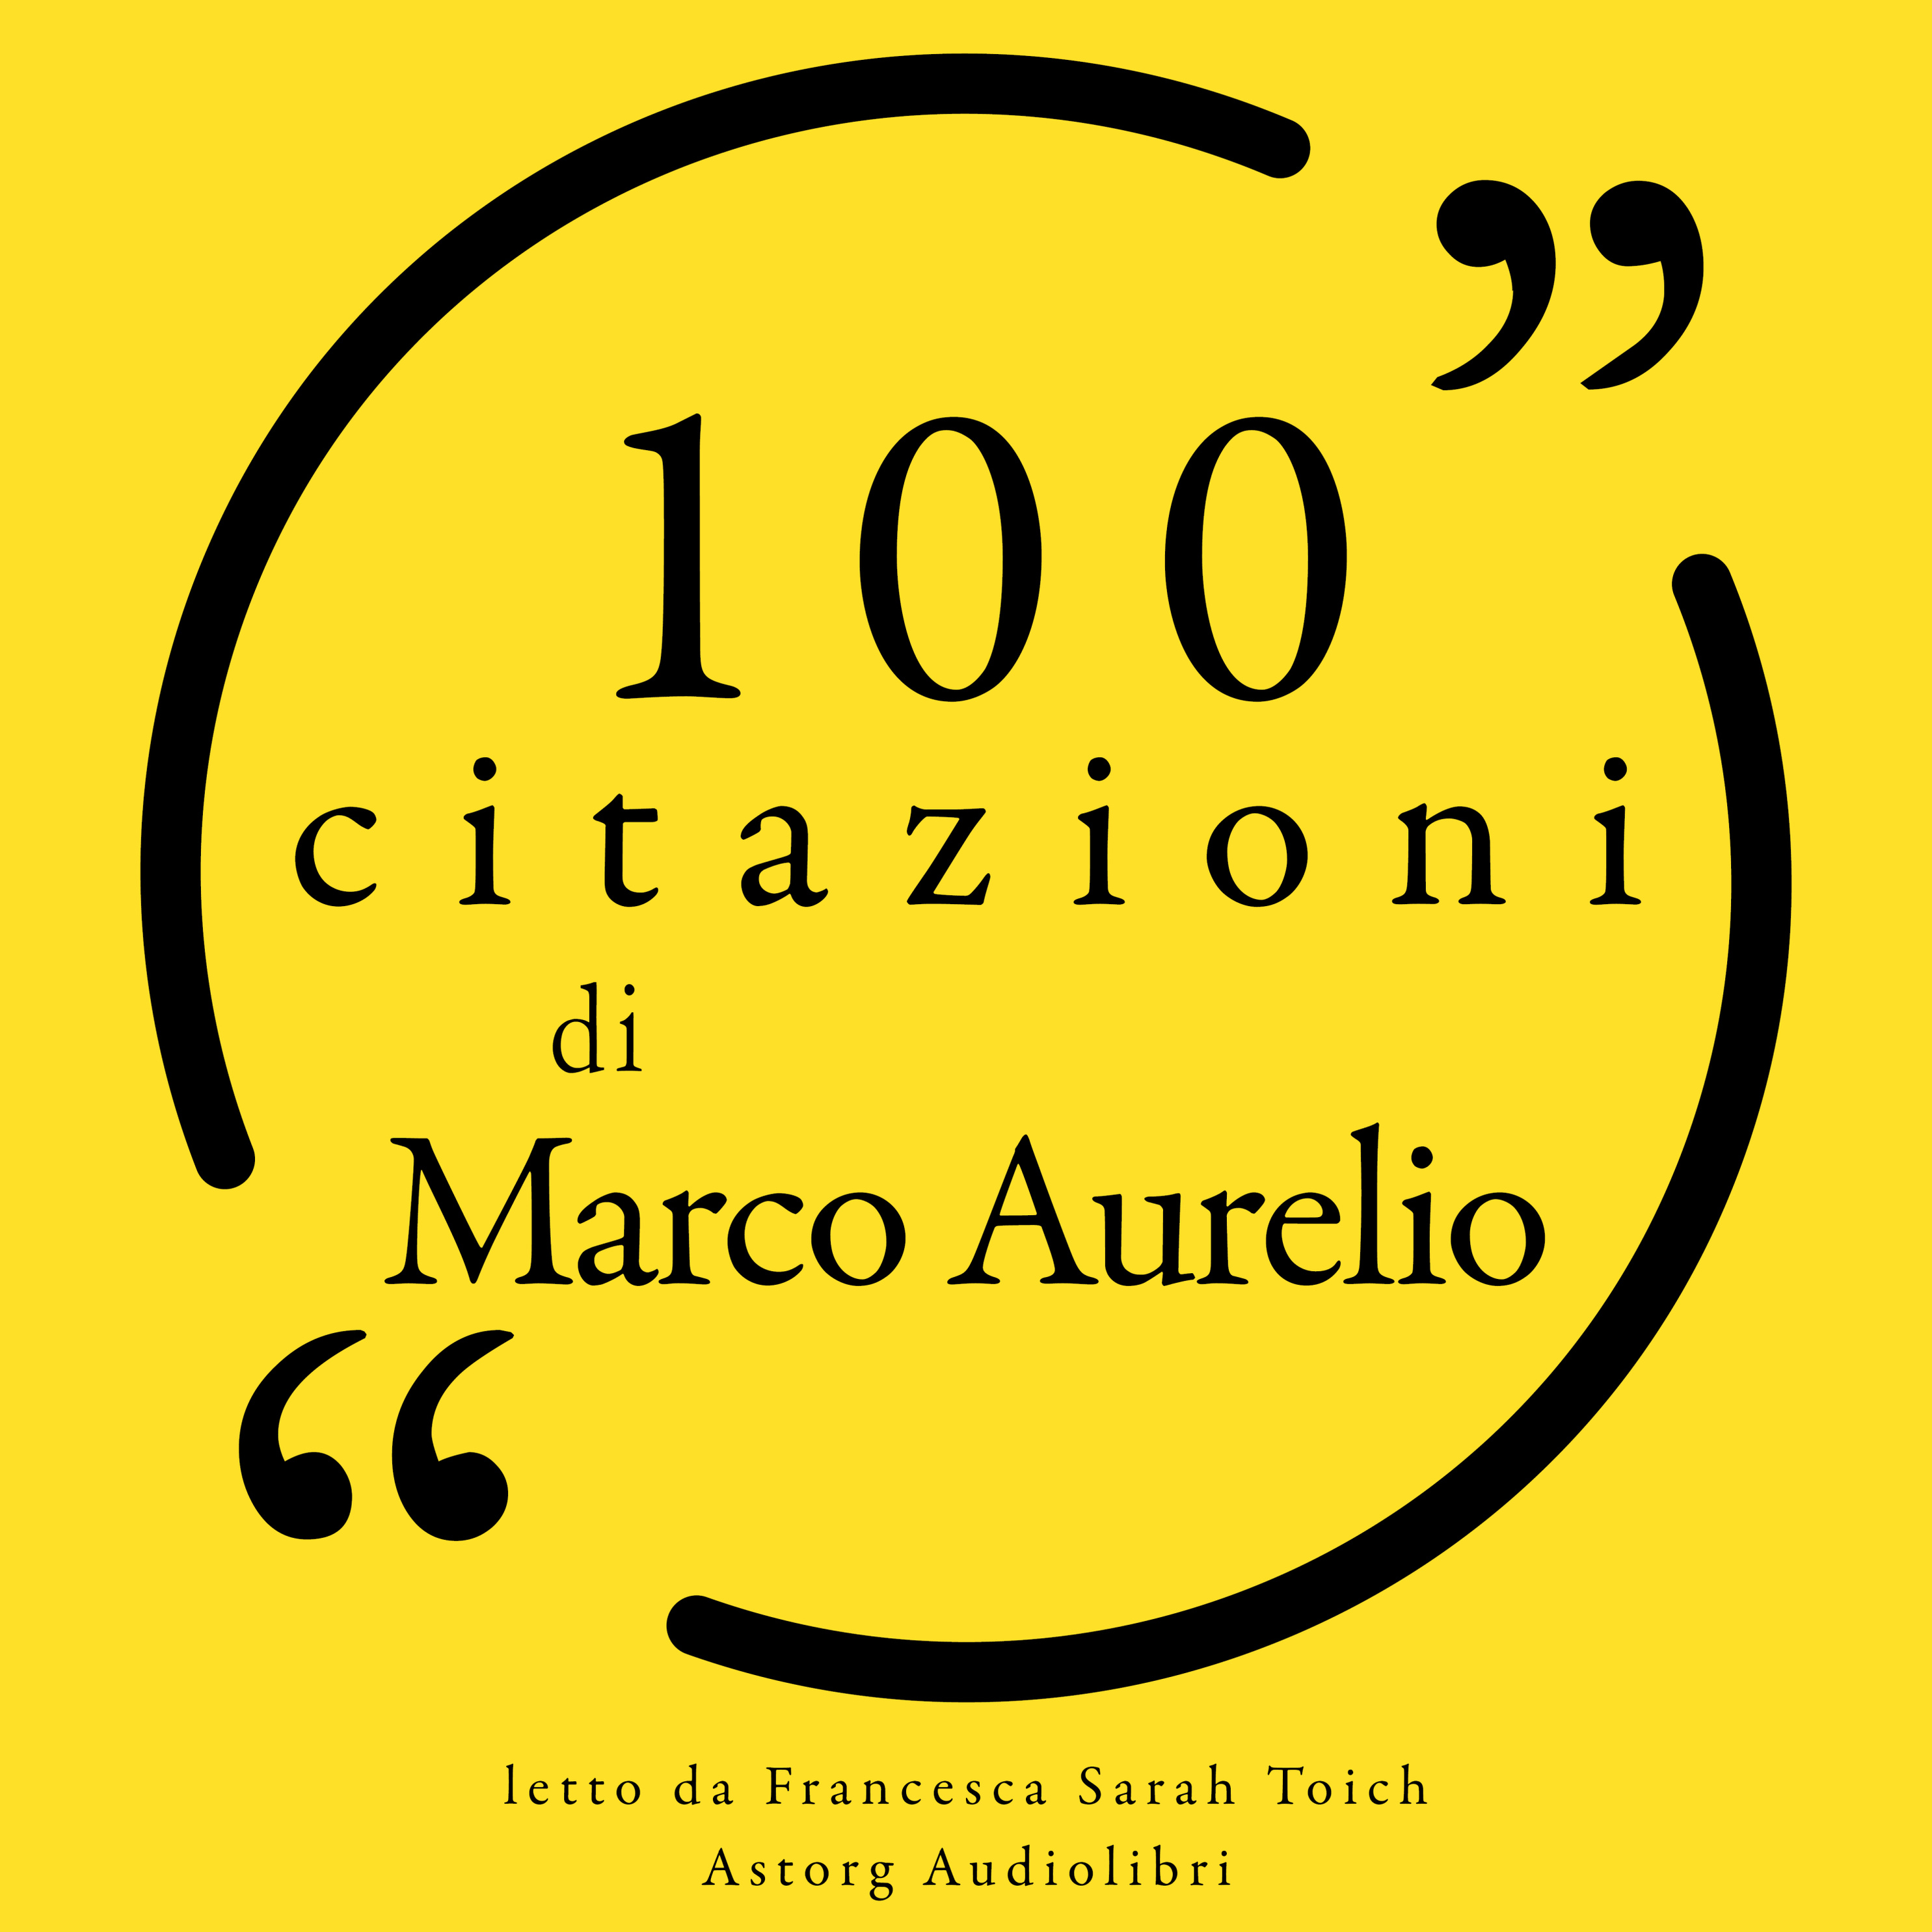 100 citazioni di Marco Aurelio Hörbuch downloaden bei